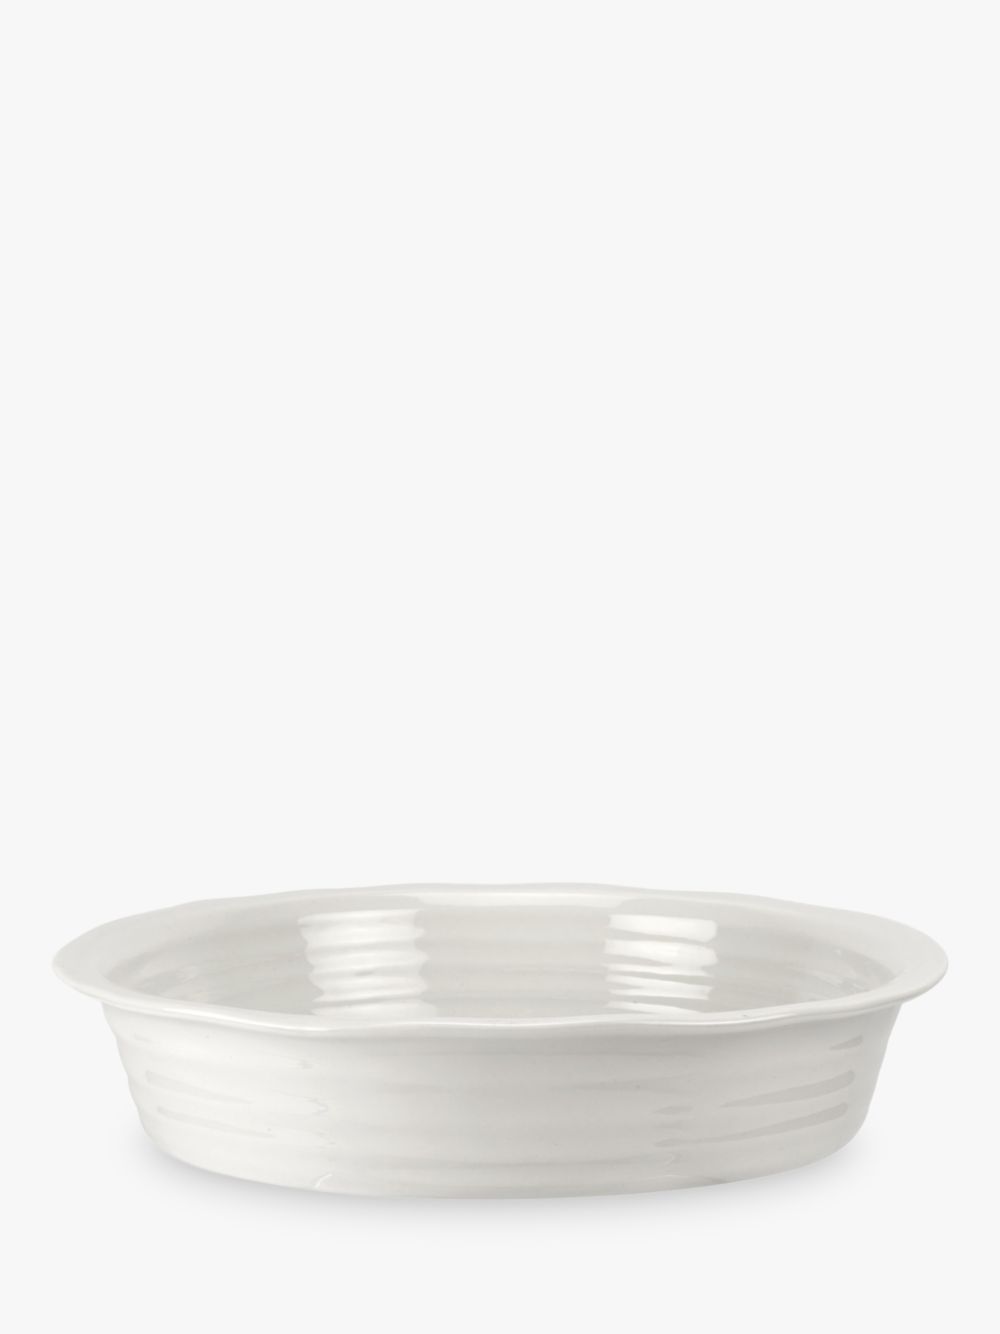 Фарфоровая круглая форма для пирога Sophie Conran for Portmeirion, 27 см, белая форма для пирога hitt aesthetic круглая 25 см